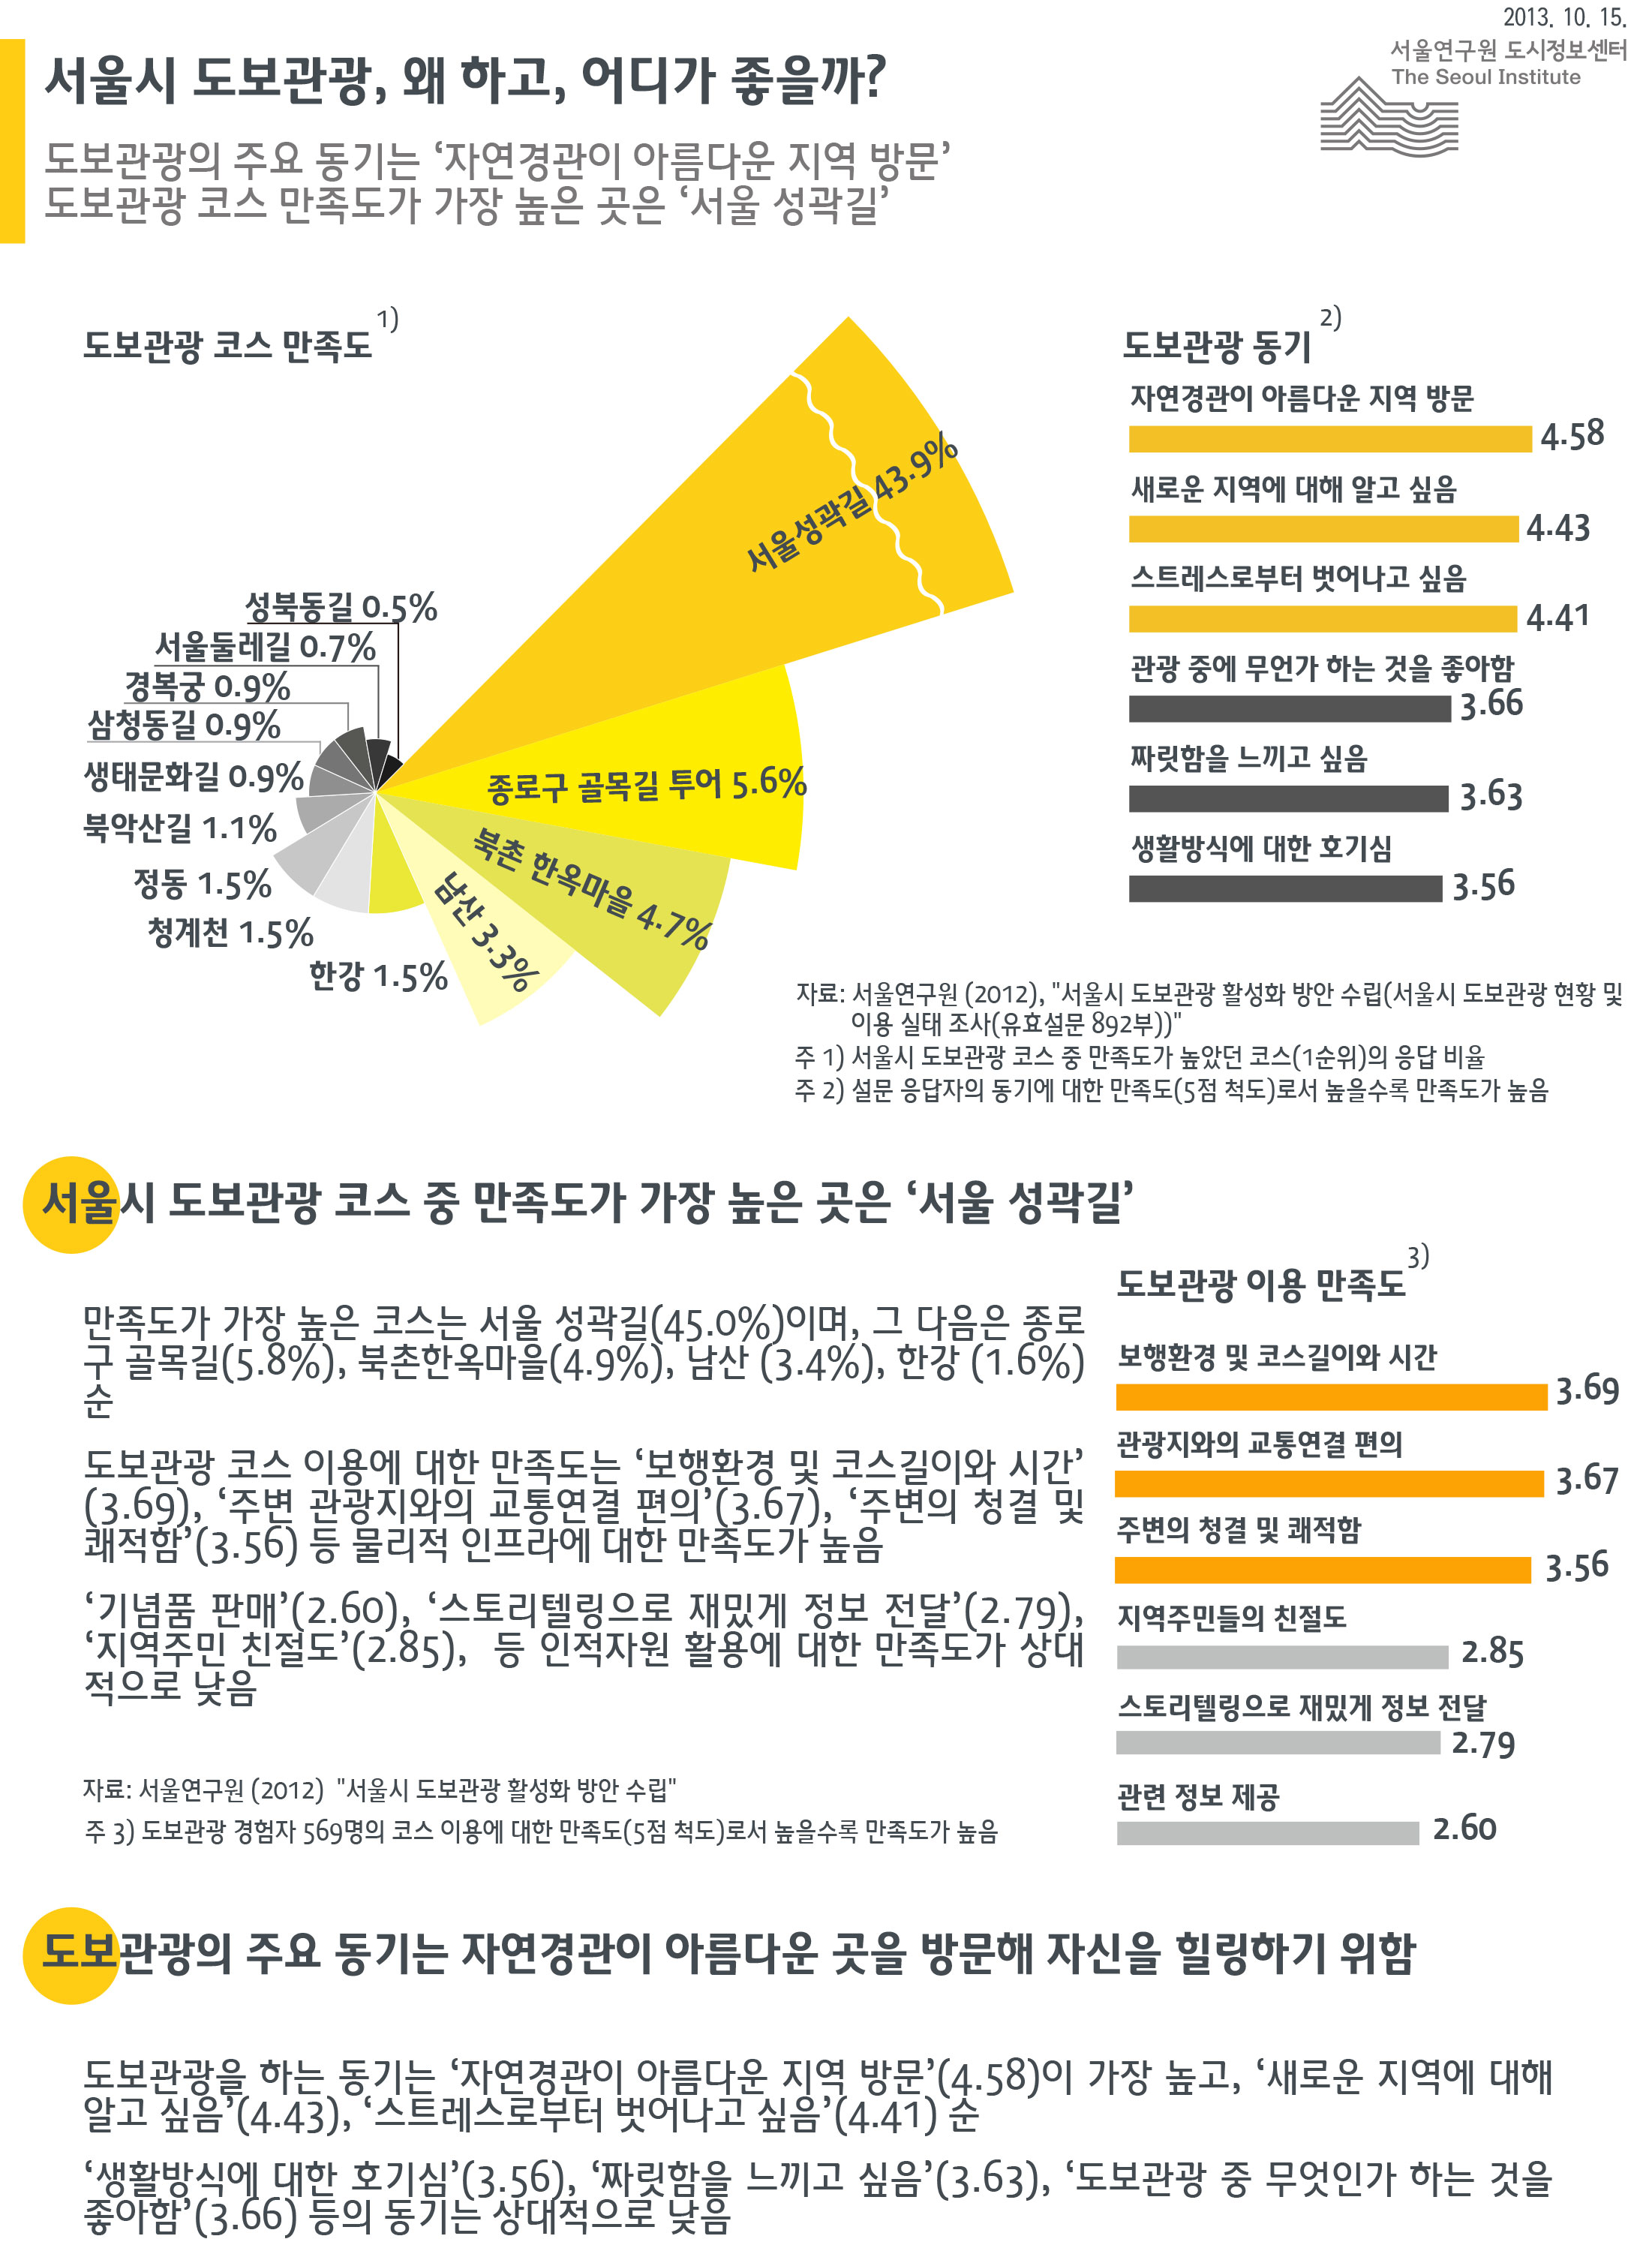 서울시 도보관광, 왜 하고, 어디가 좋을까? 서울인포그래픽스 제55호 2013년 10월 15일 서울시 도보관광 코스 중 만족도가 가장 높은 곳은 서울 성곽길, 만족도가 가장 높은 코스는 서울 성곽길(45.0%)이며, 그 다음은 종로구 골목길(5.8%), 북촌한옥마을(4.9%), 남산 (3.4%), 한강 (1.6%)순, 도보관광의 주요 동기는 자연경관이 아름다운 곳을 방문해 자신을 힐링하기 위함으로 정리될 수 있습니다. 인포그래픽으로 제공되는 그래픽은 하단에 표로 자세히 제공됩니다.